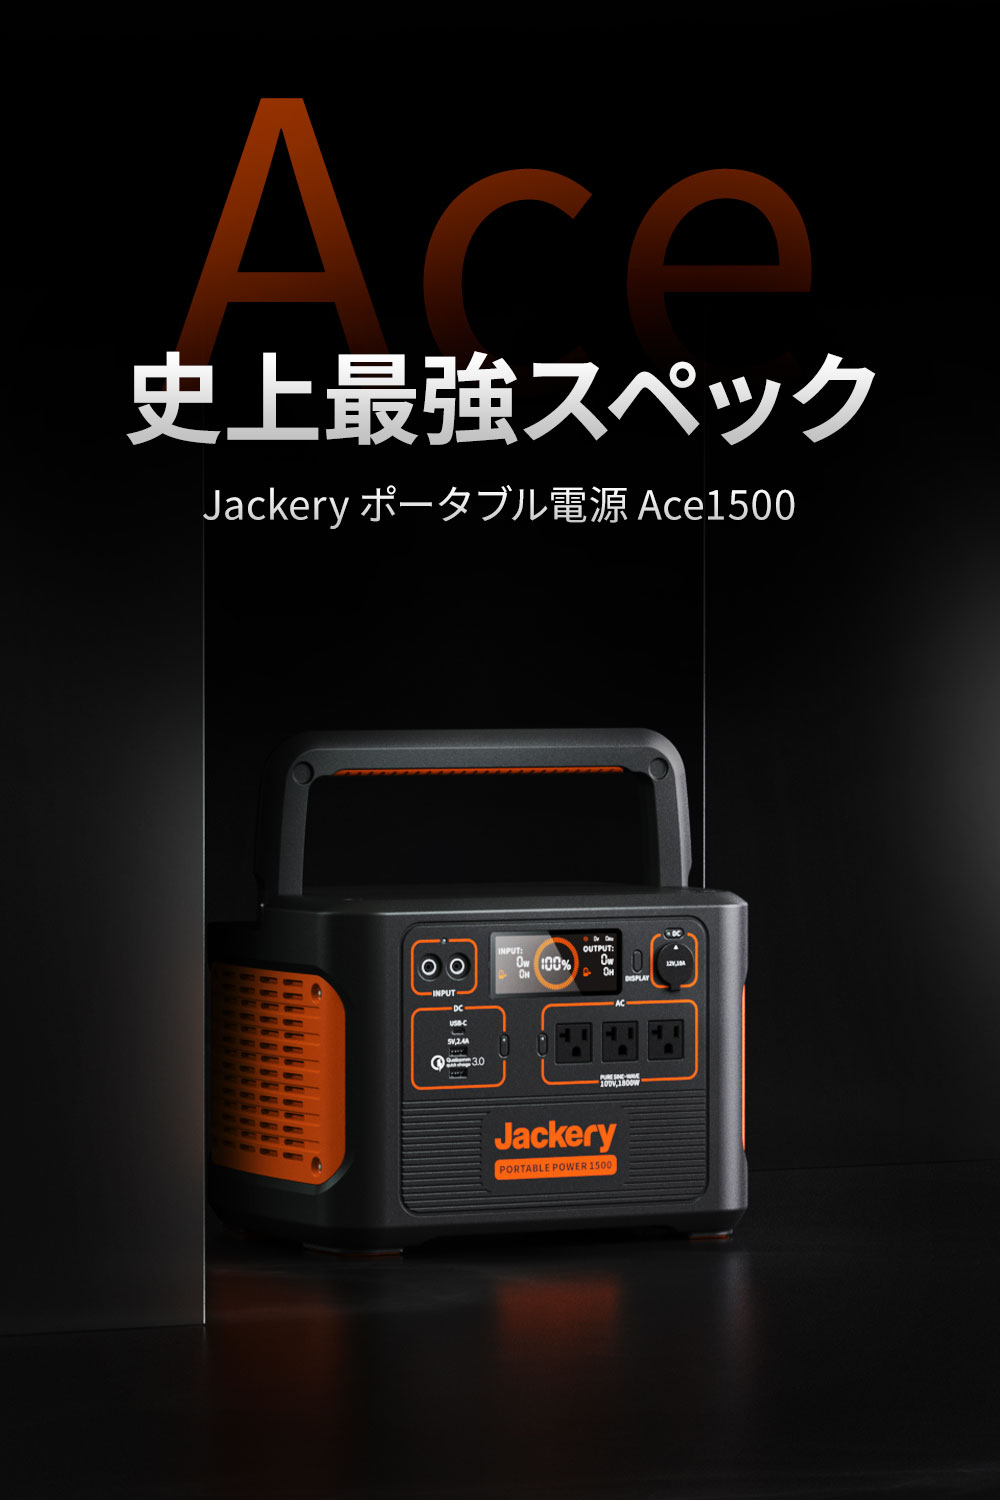 Jackery Jackery ポータブル電源 Ace1500